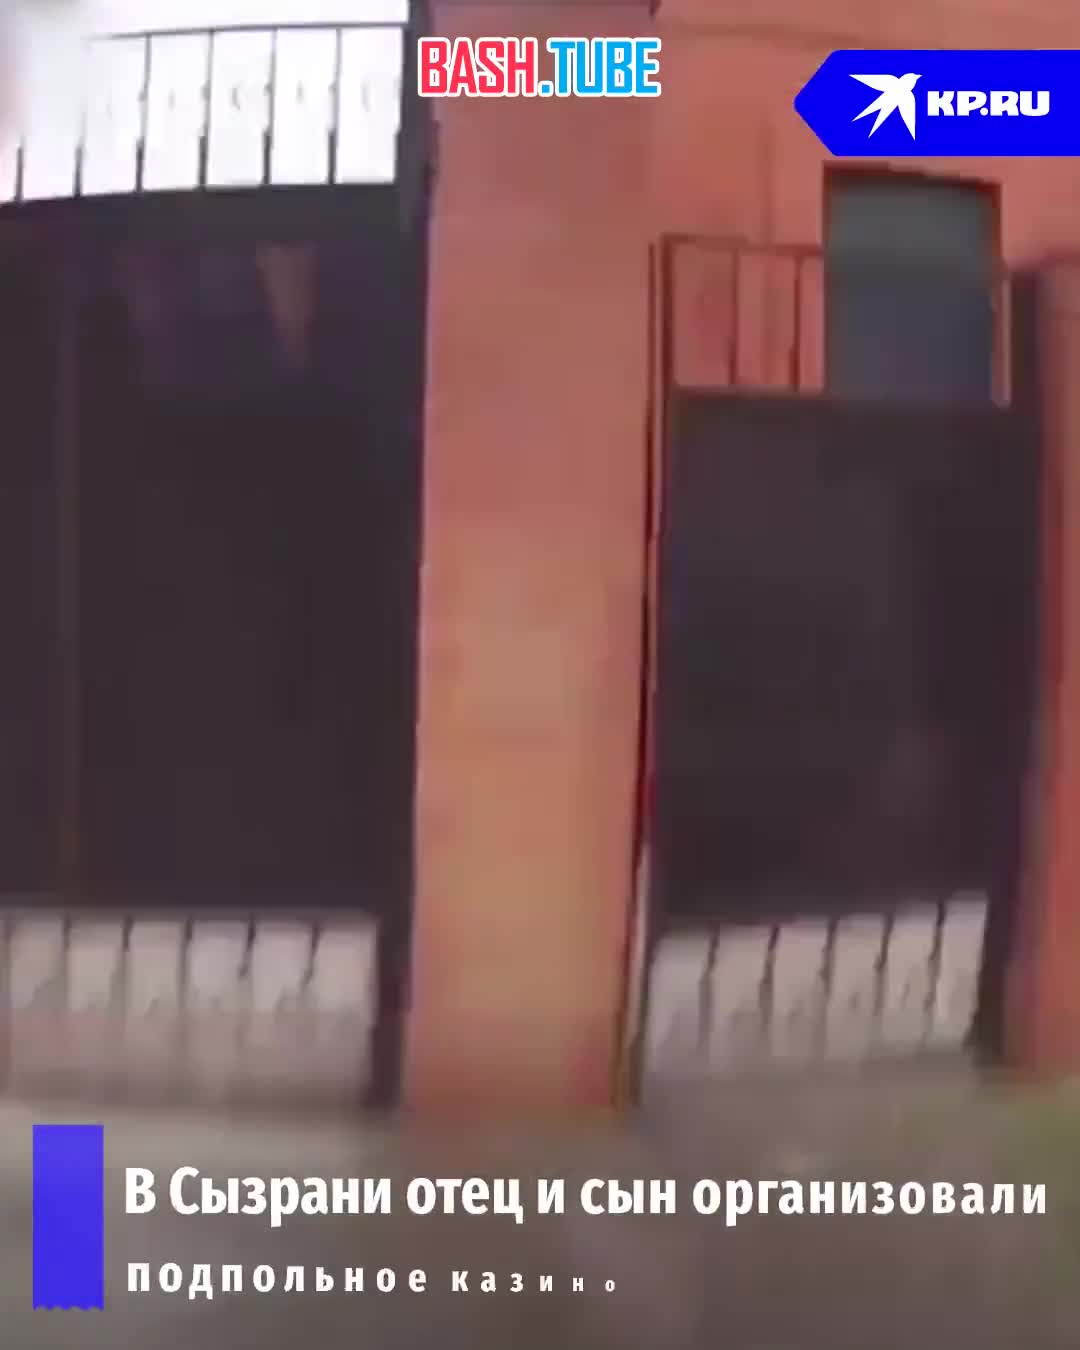  Ставок больше нет: силовики накрыли подпольное казино в частном доме в Сызрани